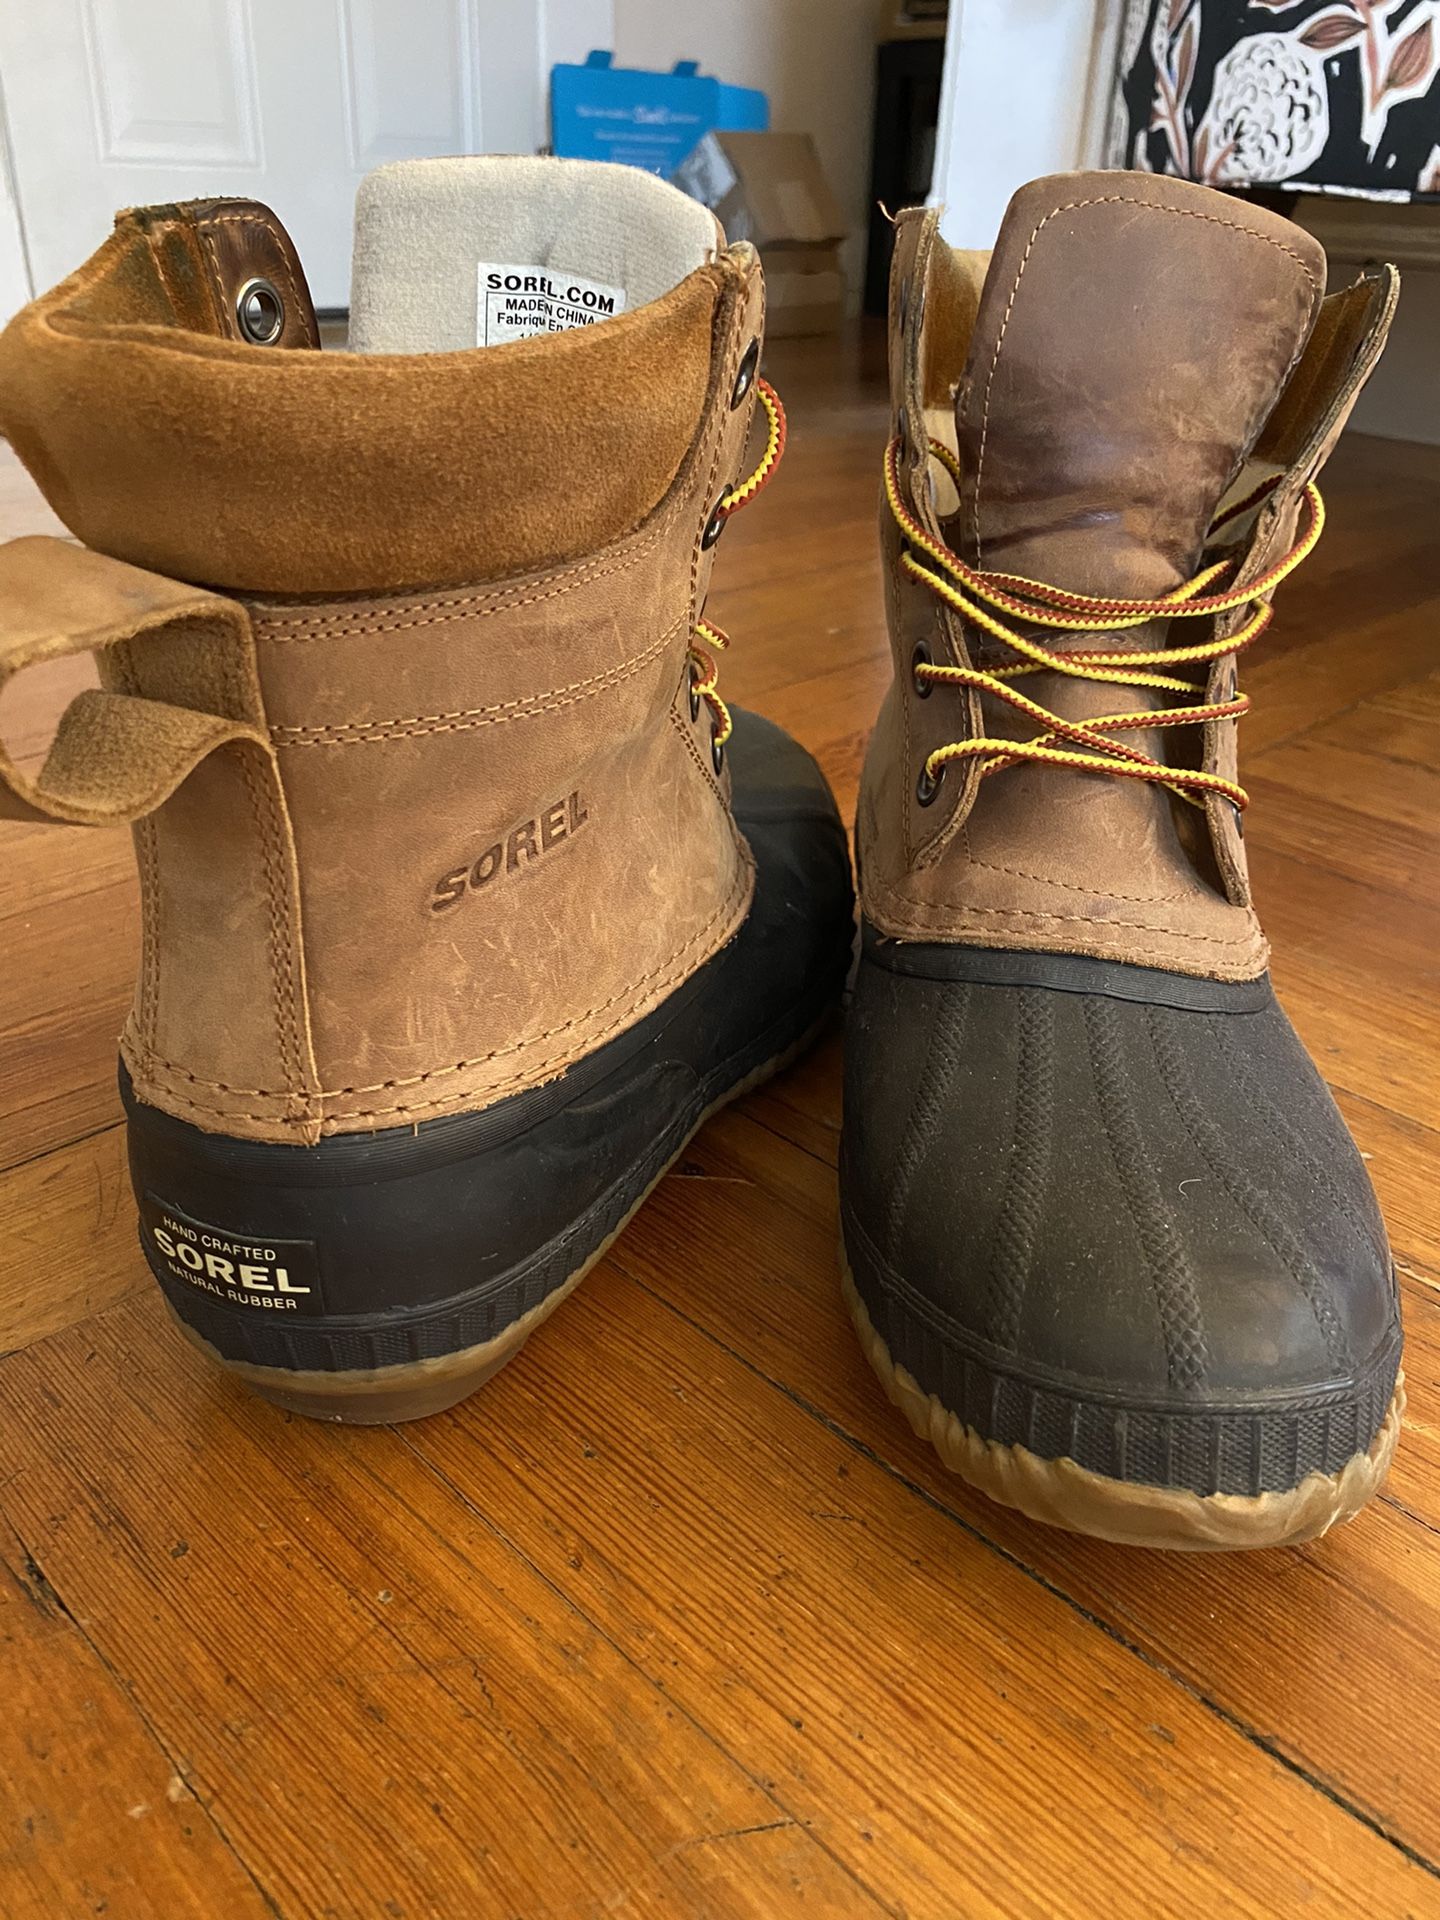 Sorel Waterproof Duck Boot - Men’s Size 10